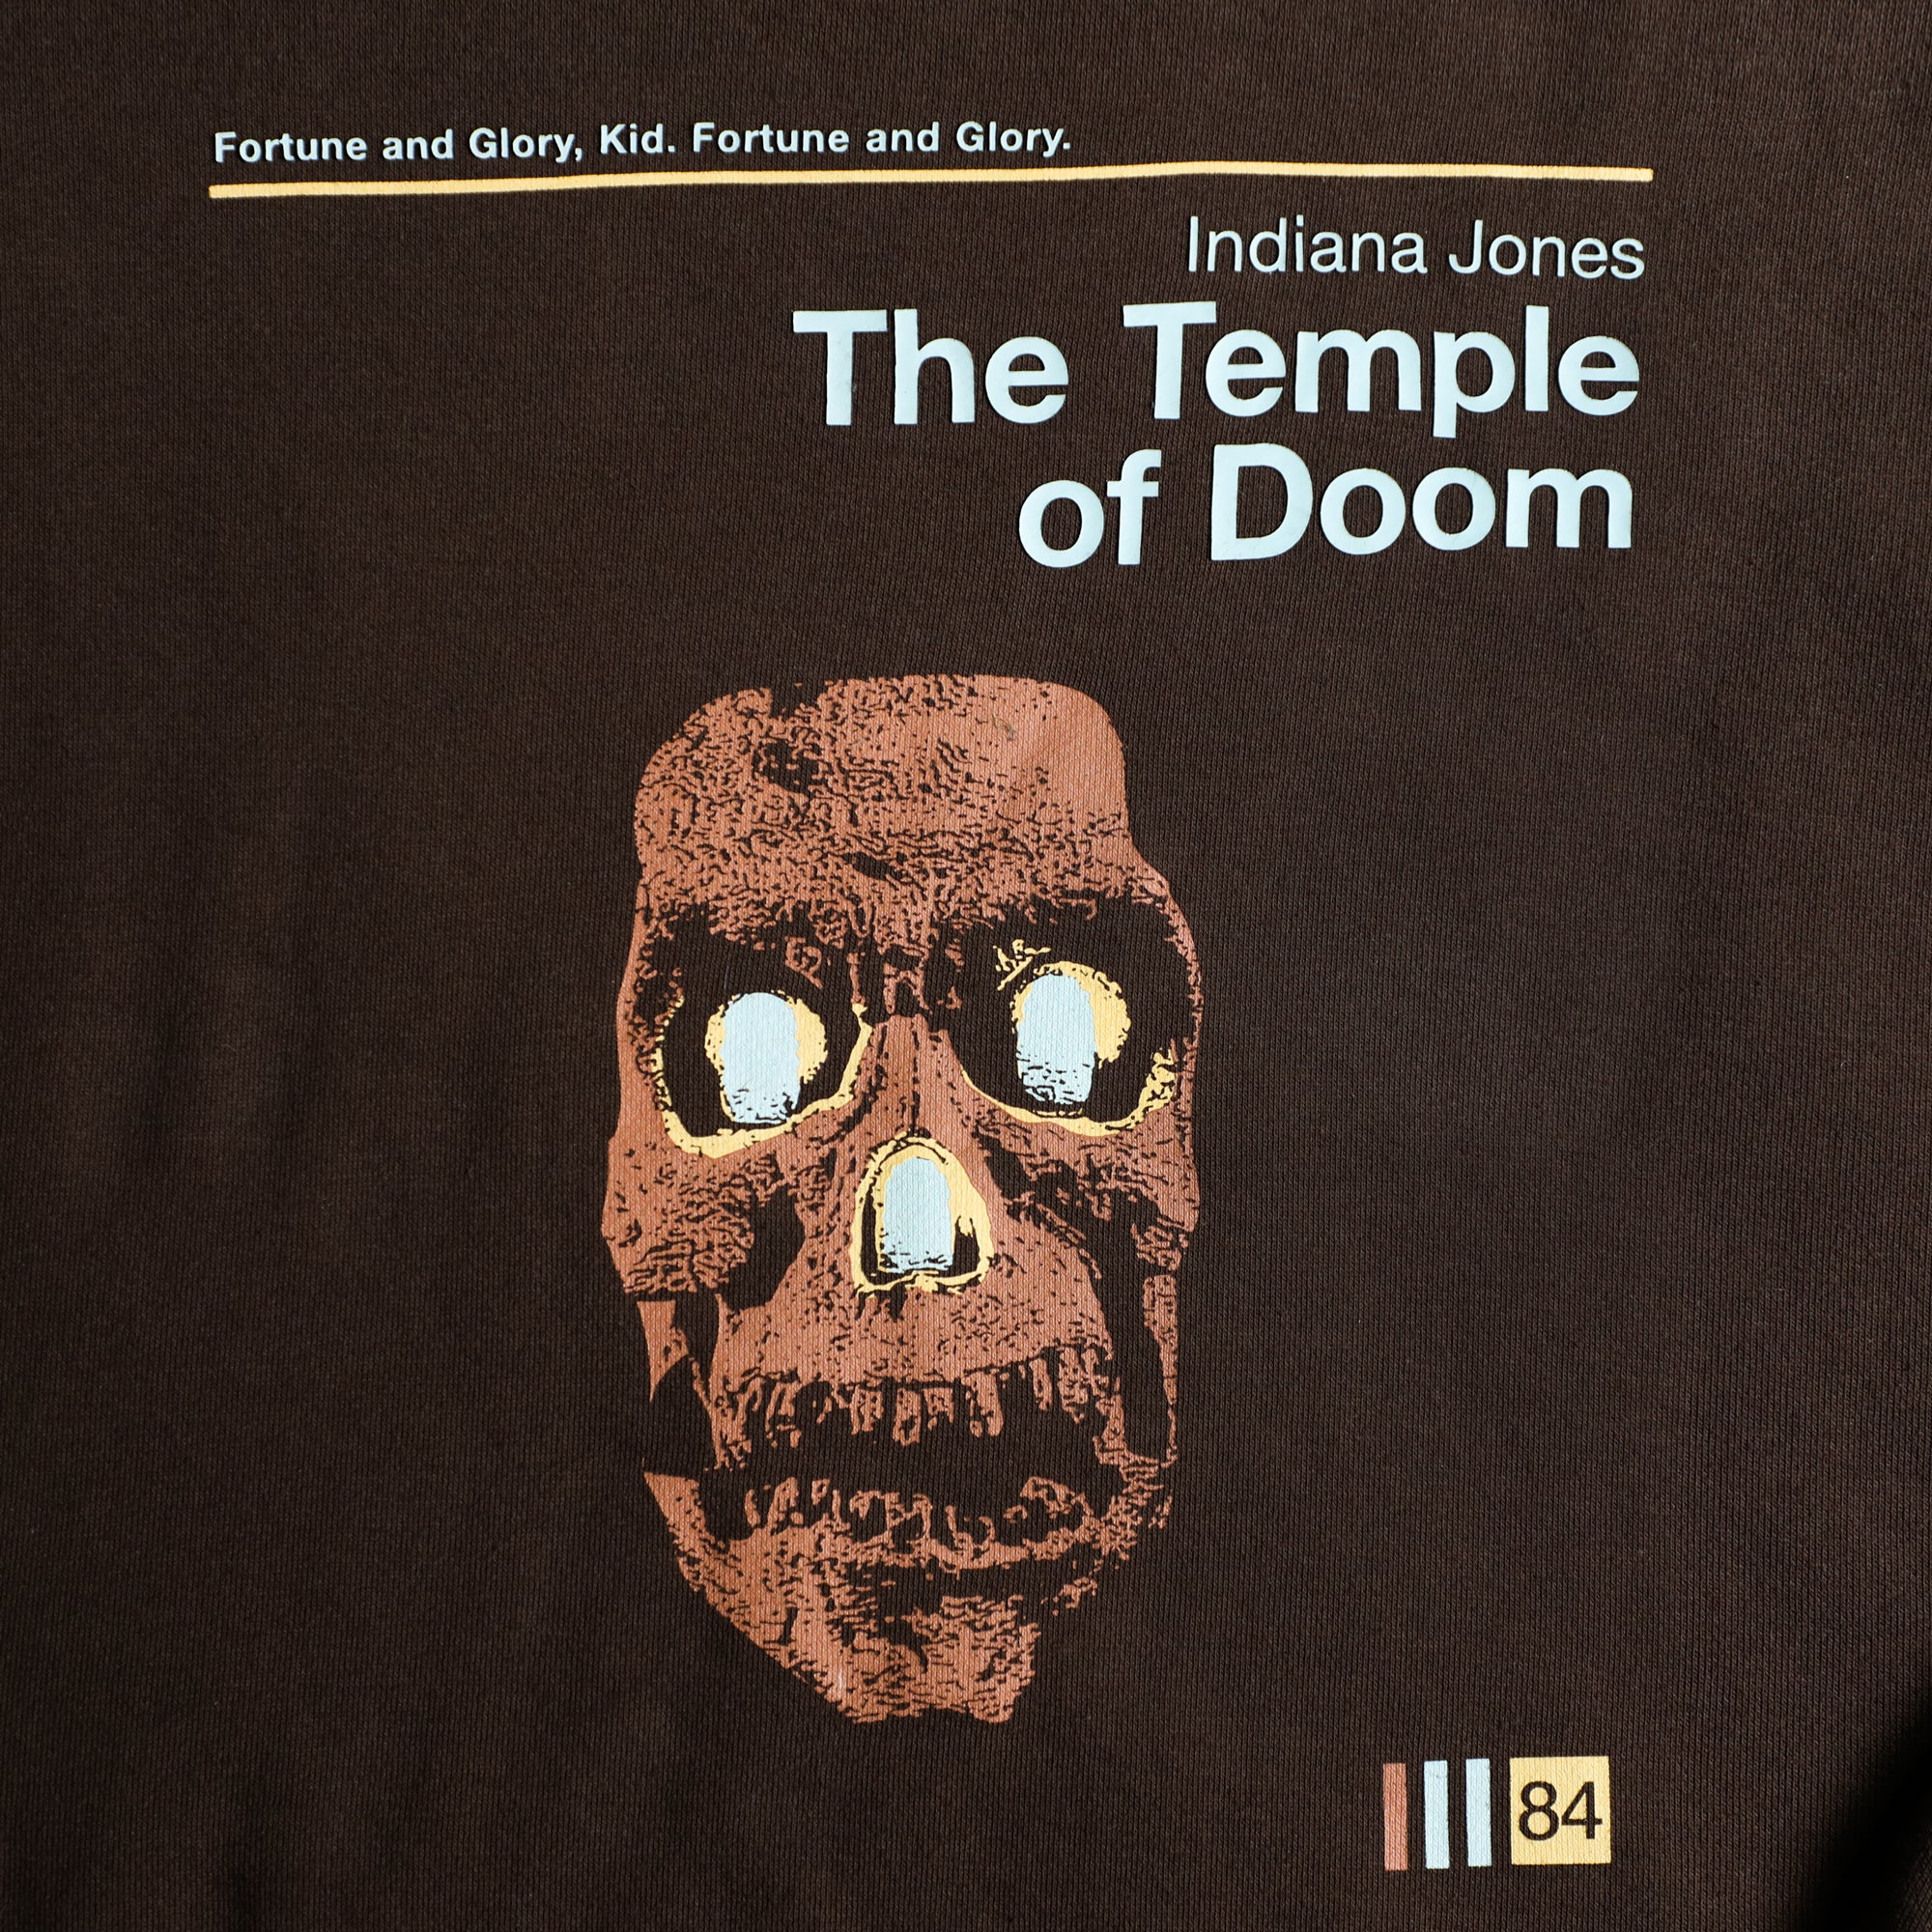 Temple of Doom Sweatshirt